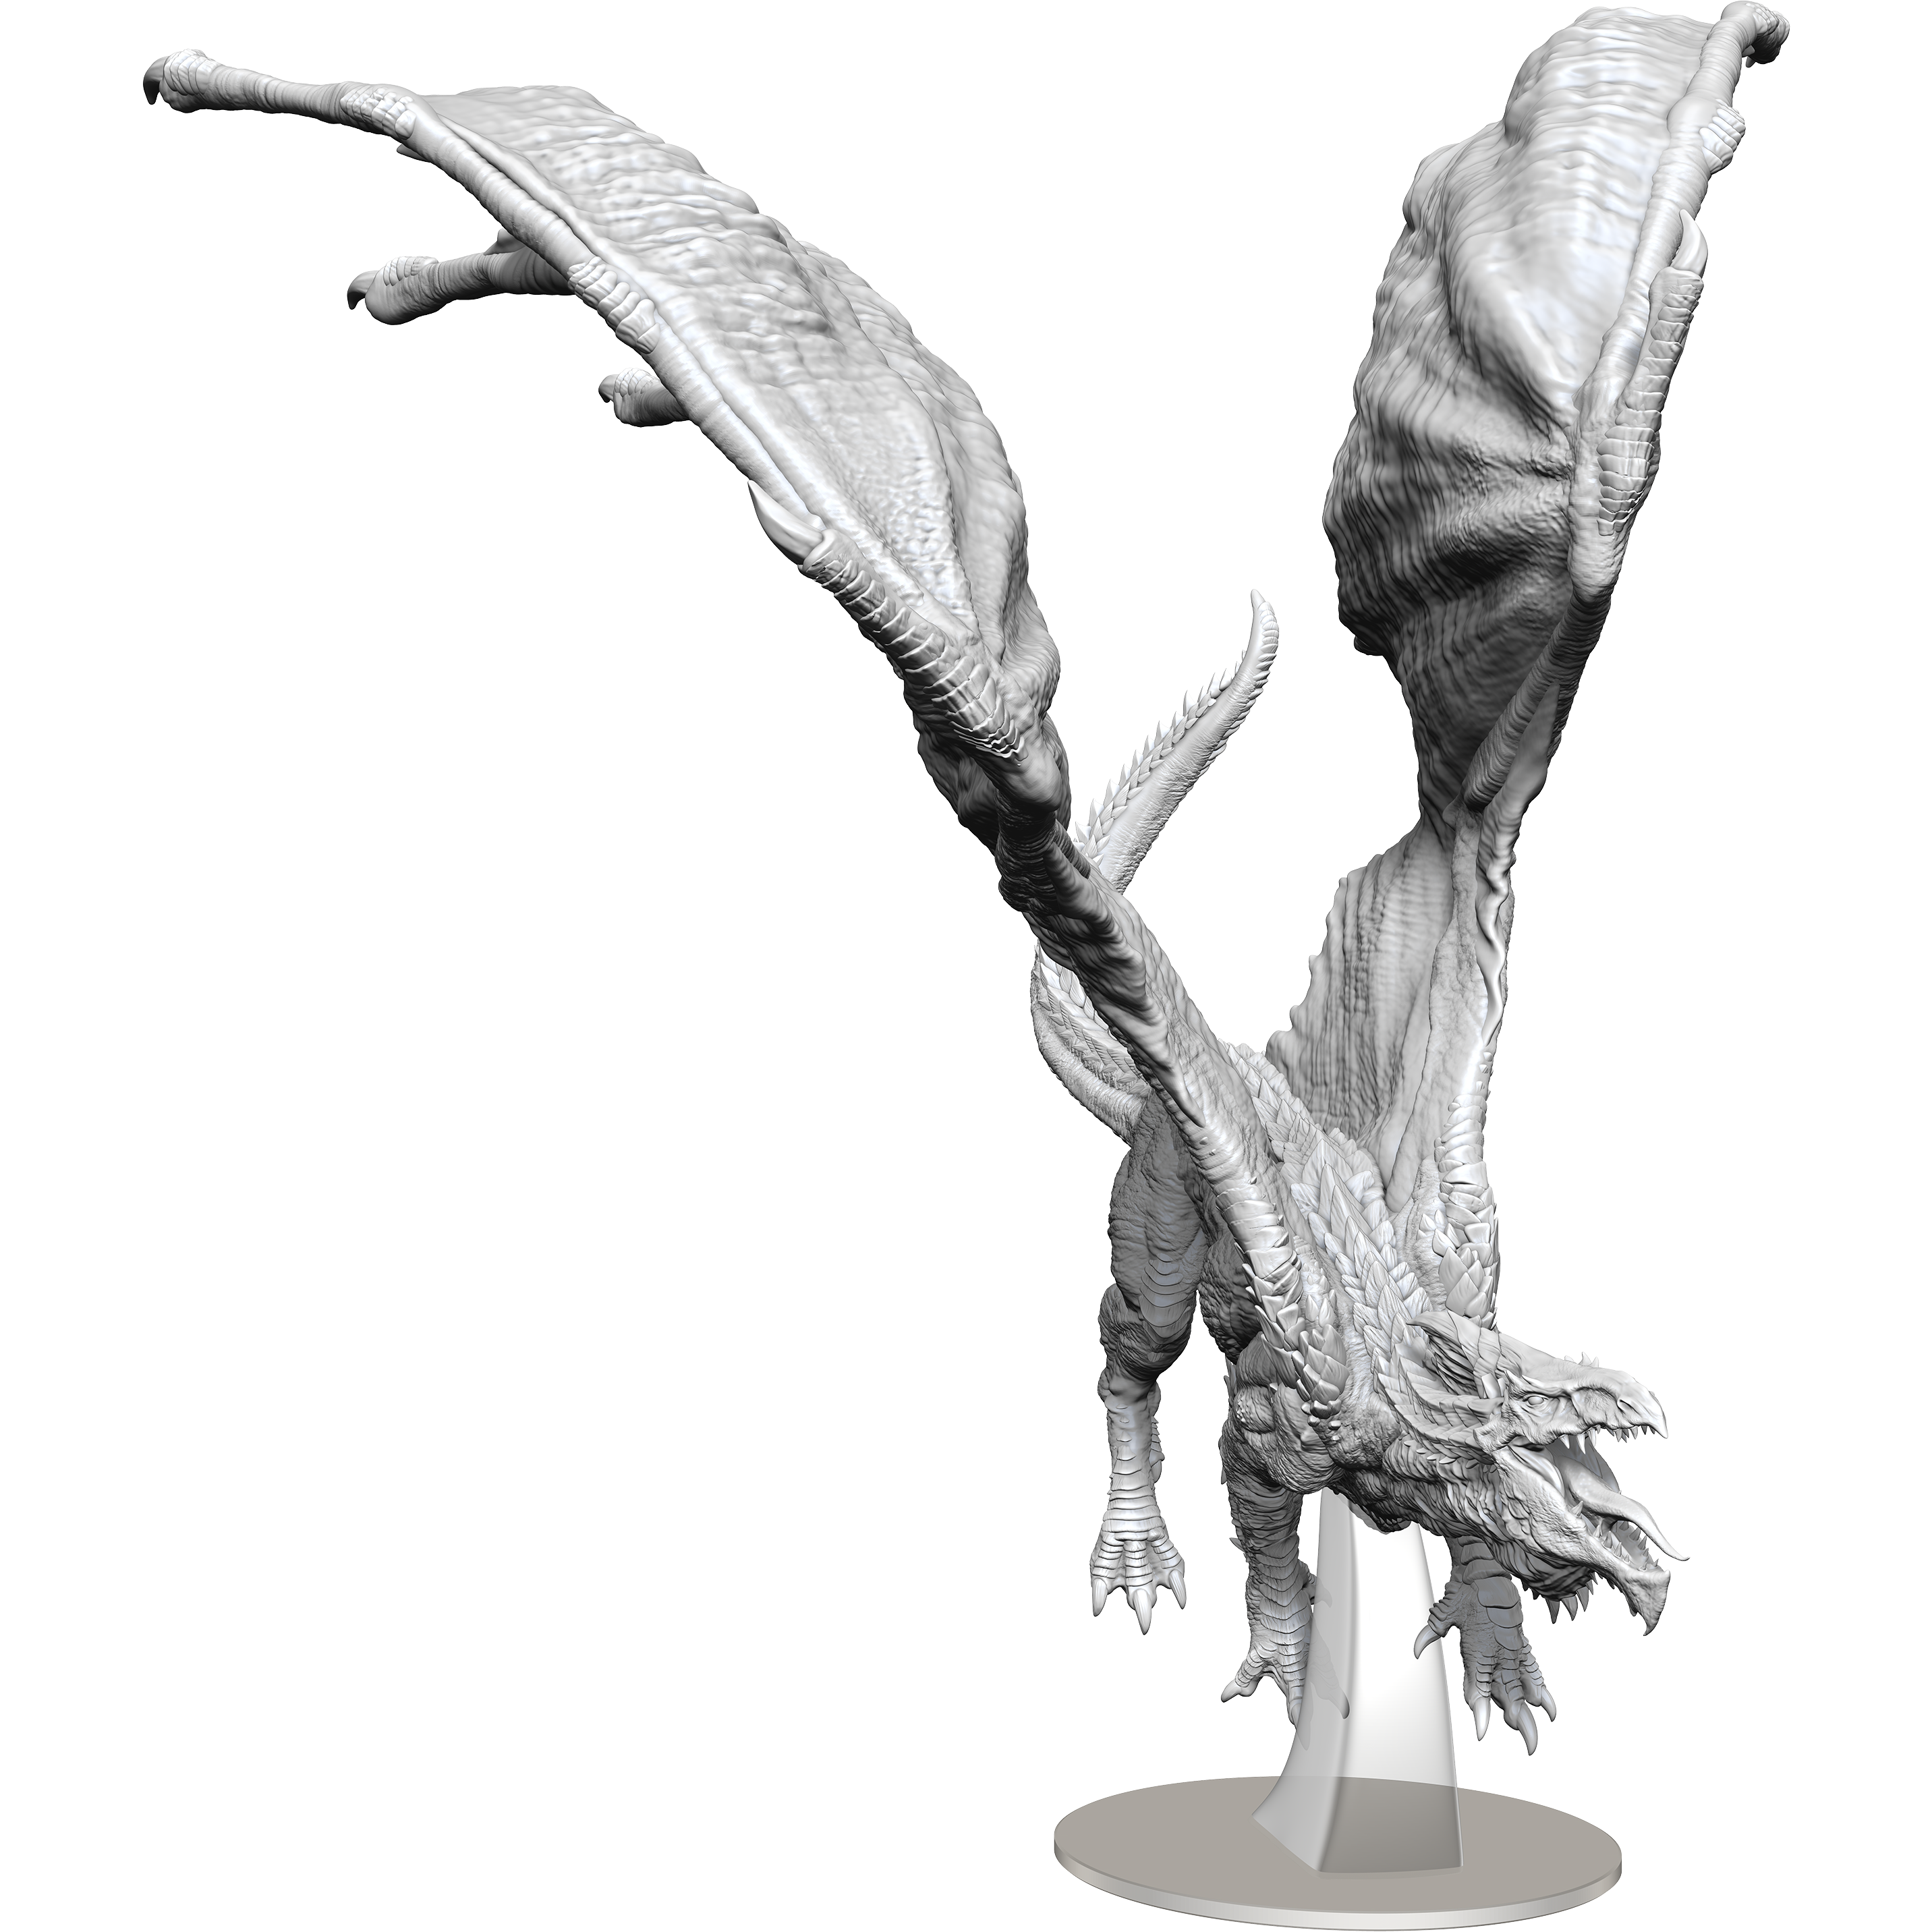 D&D - Minis - Nolzurs Marvelous Miniatures - Adult White Dragon